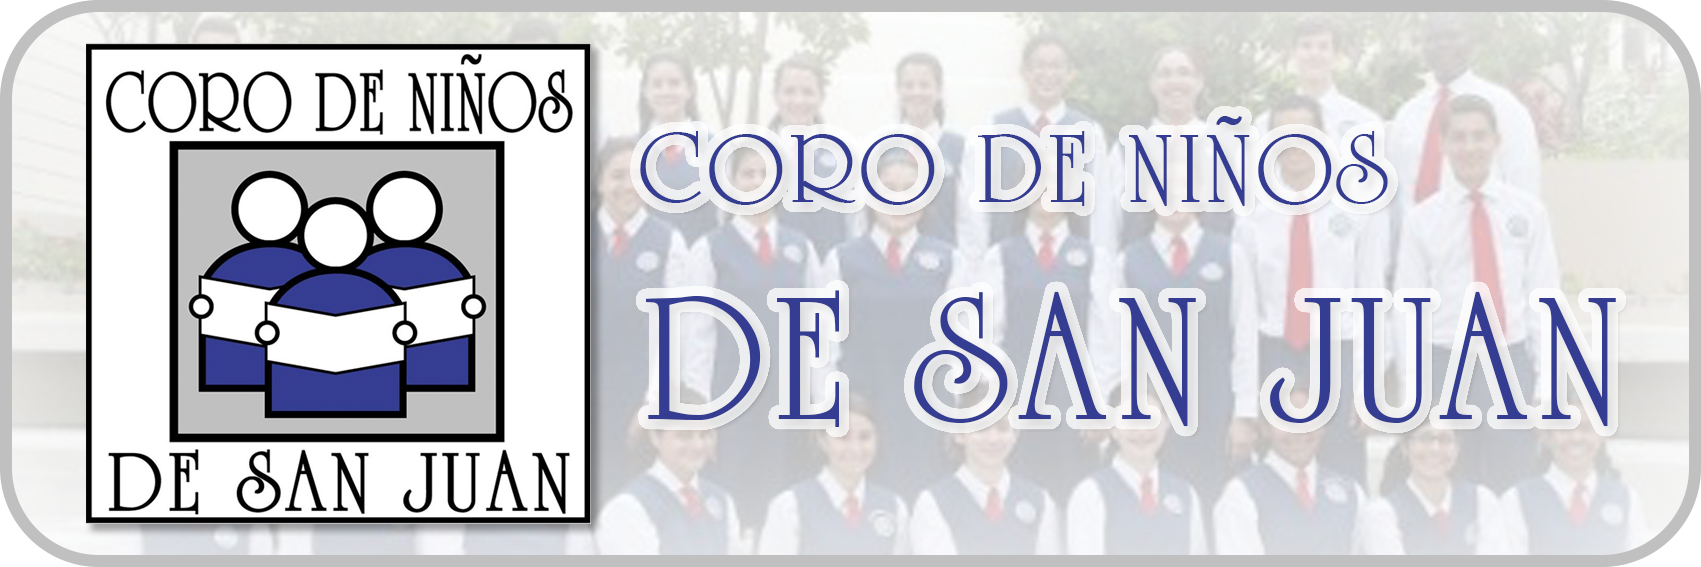 Coro de Ninos de San Juan